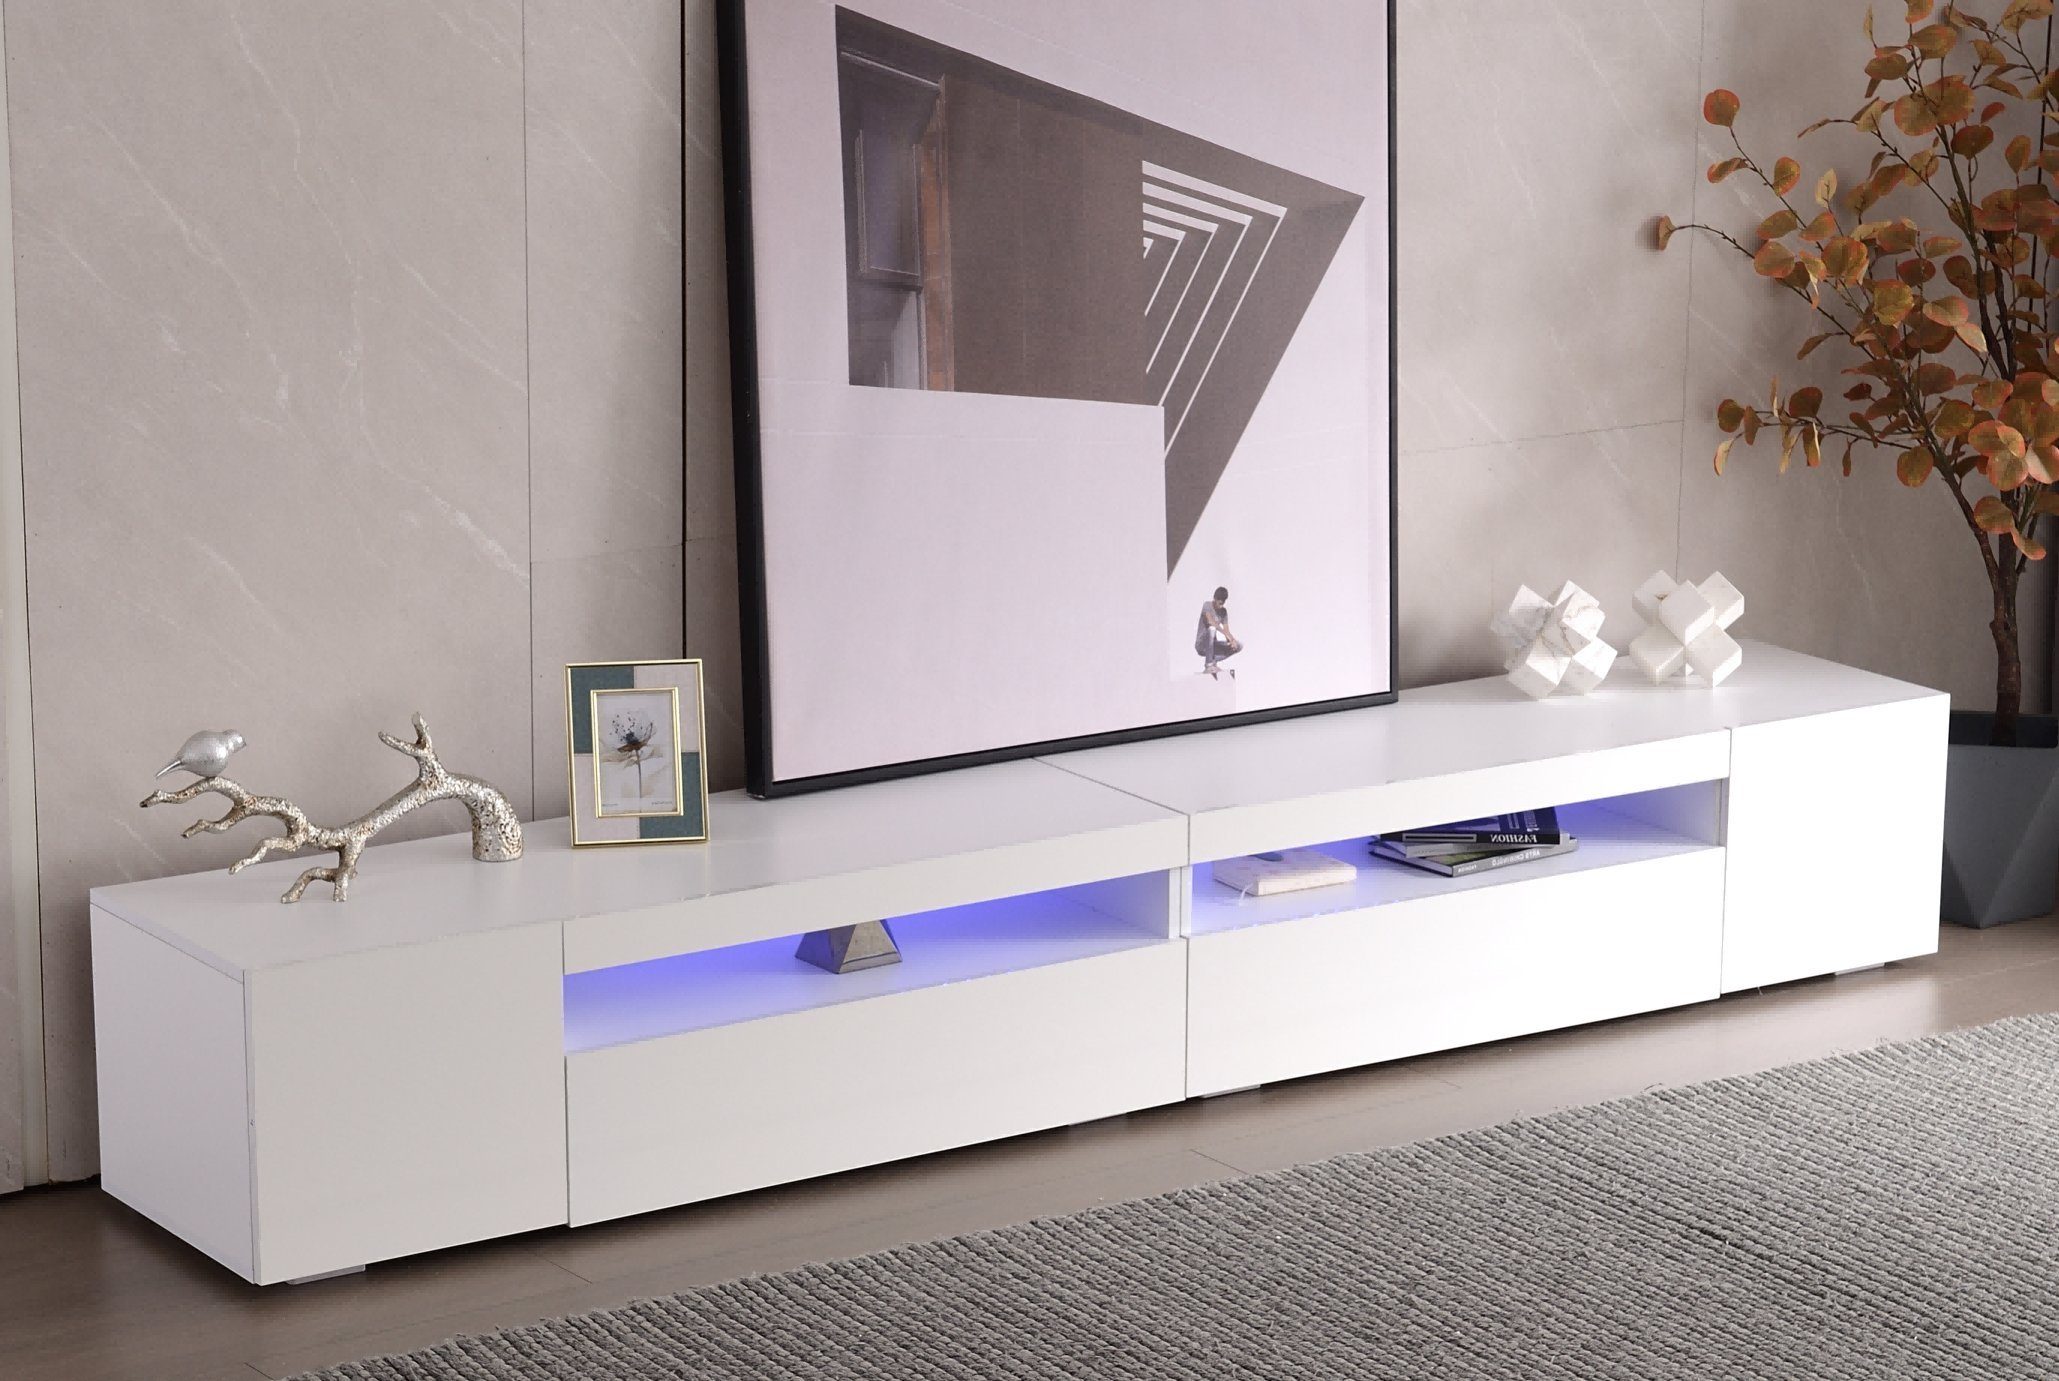 Merax Lowboard mit 16 Farben LED Beleuchtung, TV-Kommode, TV Schrank weiß  hochglanz, Fernsehtisch mit 2 Türen, 1 Klappe und 1 offenes Fach,  B/H/T:240/35/39cm